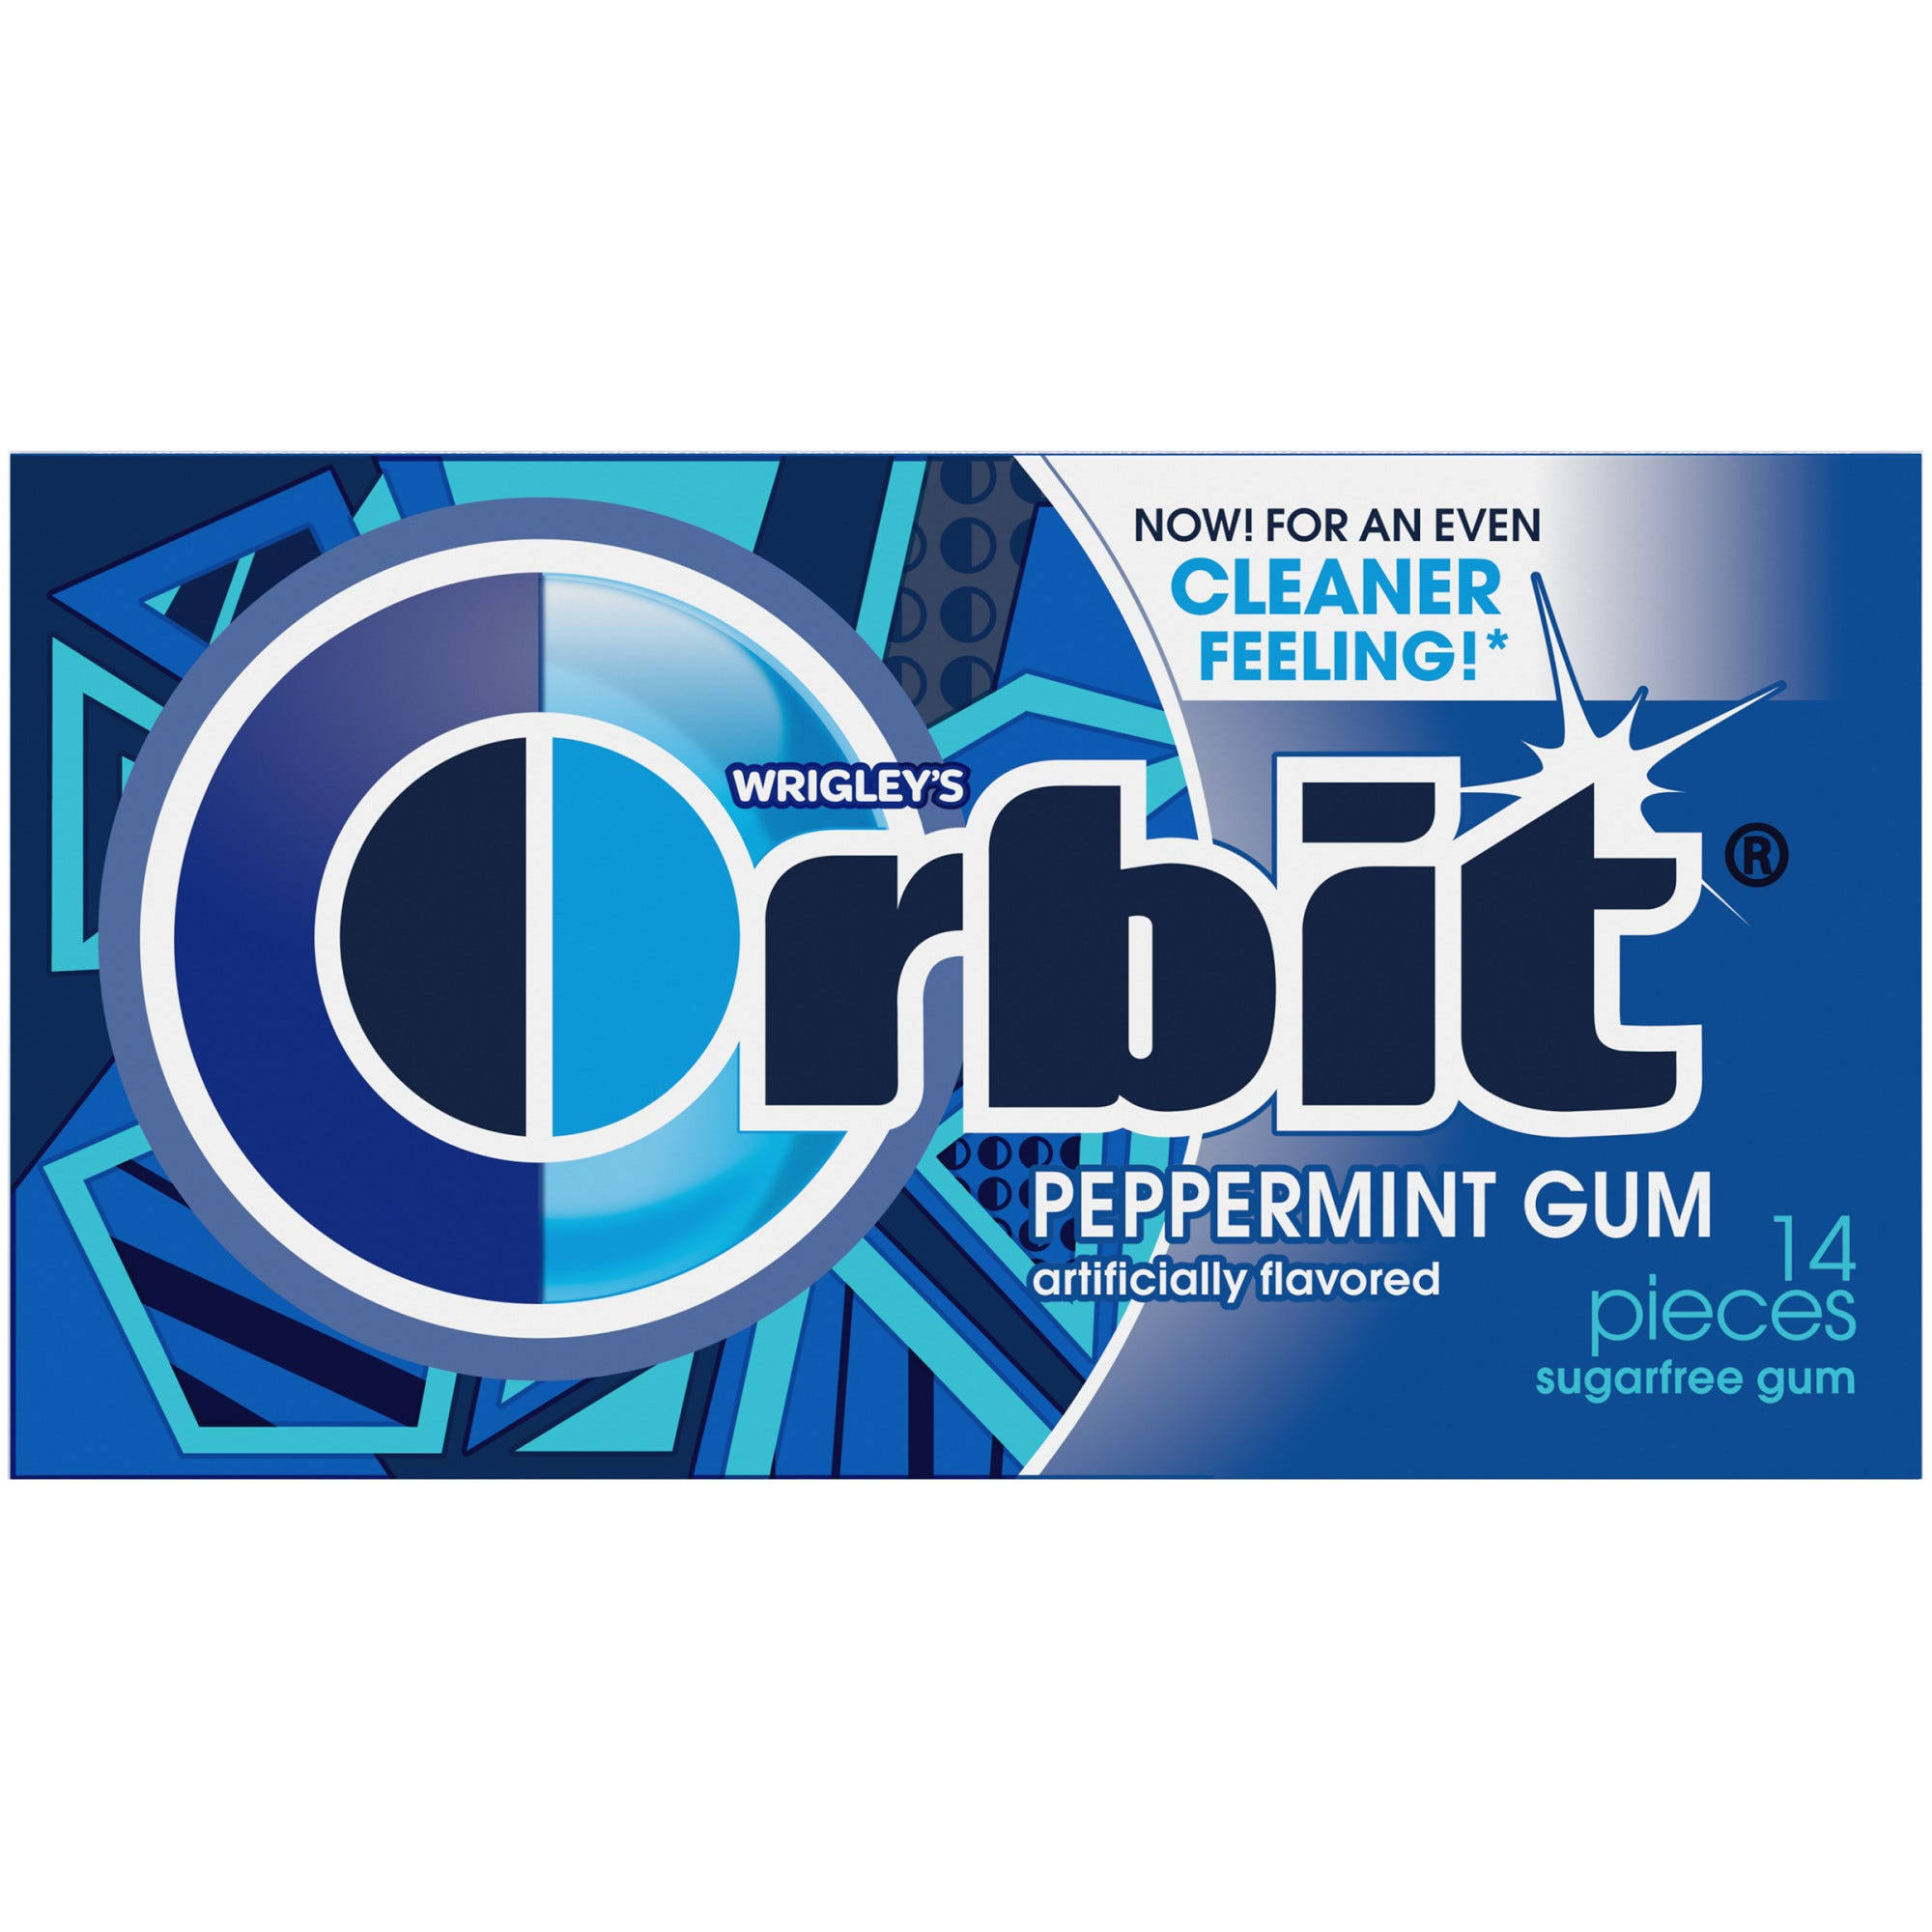 Orbit Chewing Gum - Original Peppermint, 14 Count